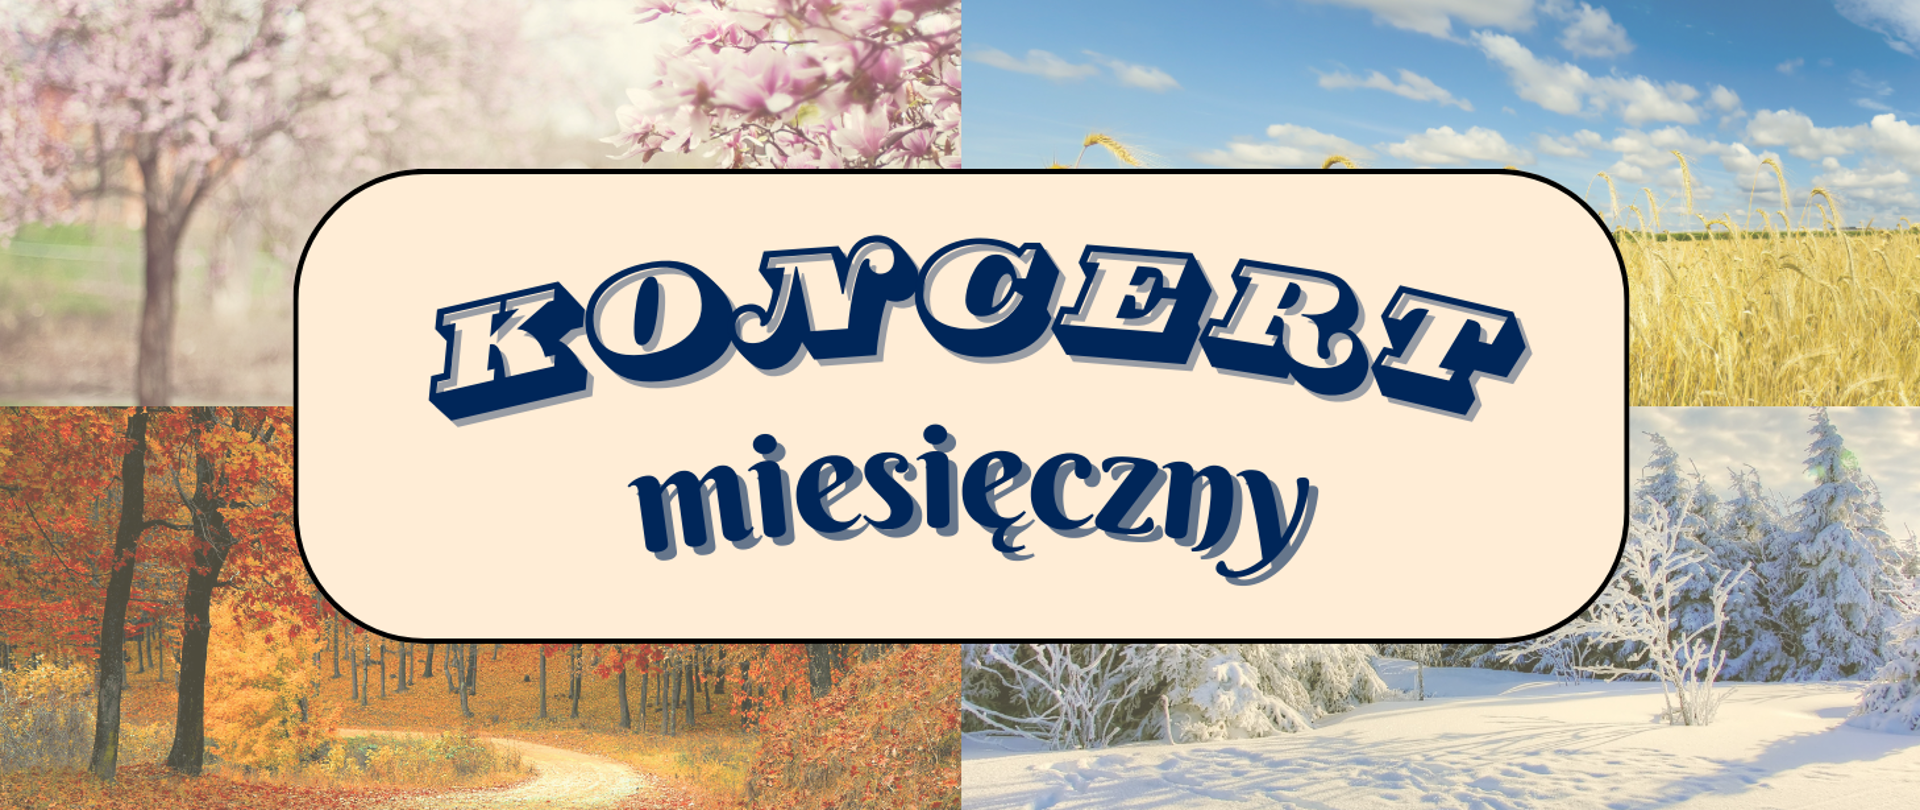 Baner koncertu miesięcznego. W tle cztery fotografie przedstawiające pejzaż wiosenny, letni, jesienny i zimowy. Na środku napis: Koncert miesięczny.